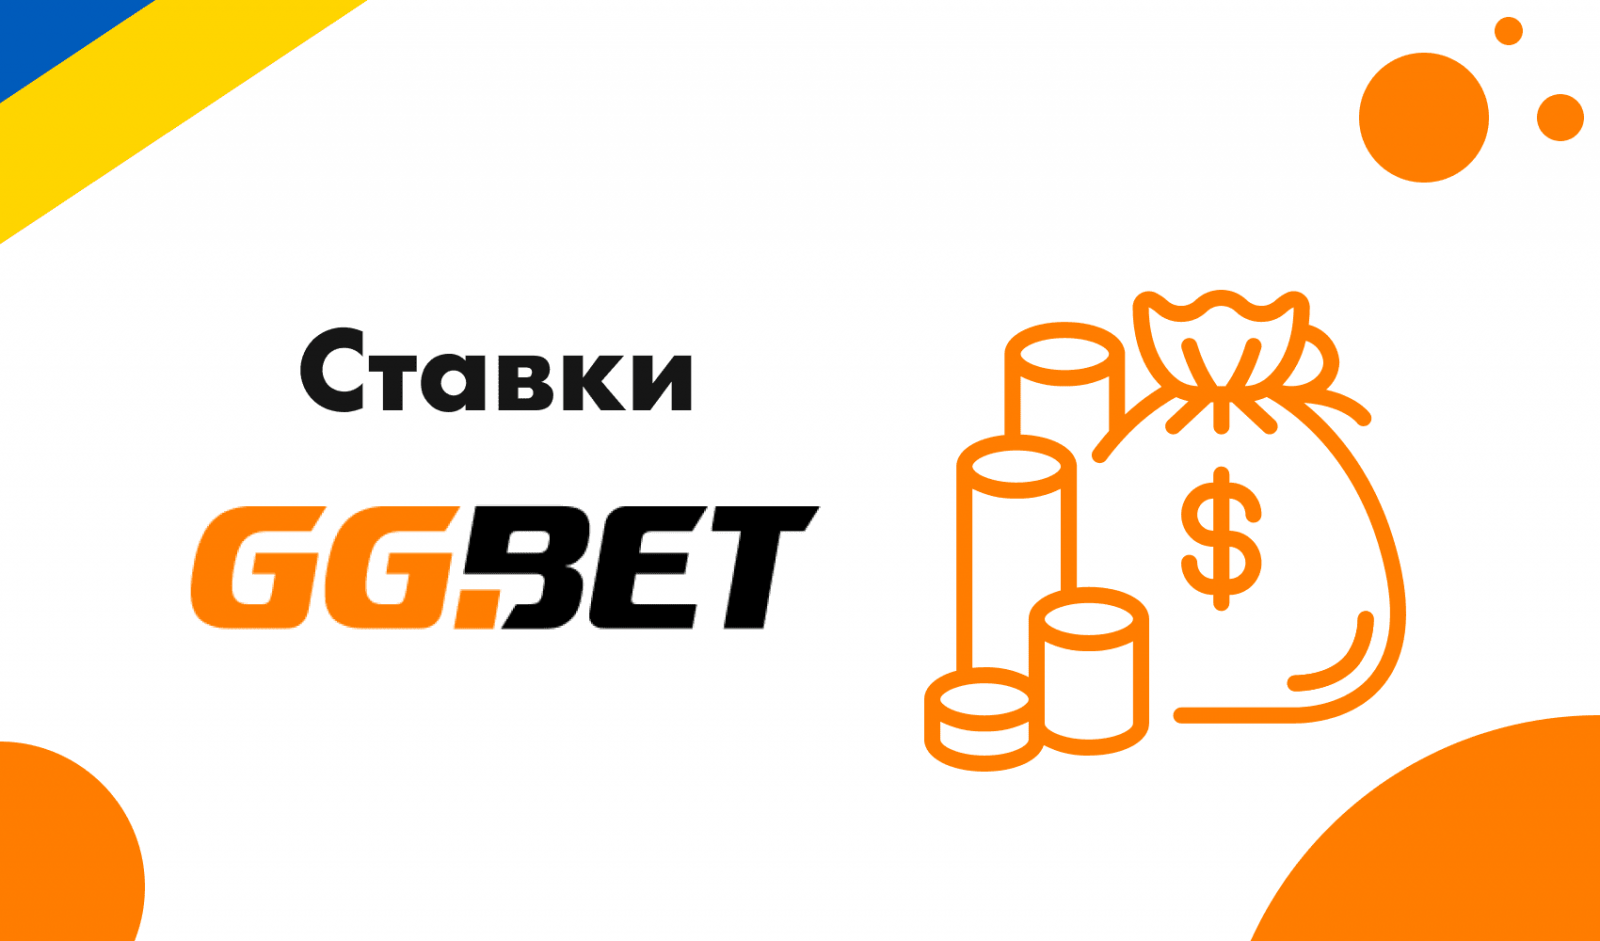 Ггбет. GGBET конкурсы. GGBET logo.